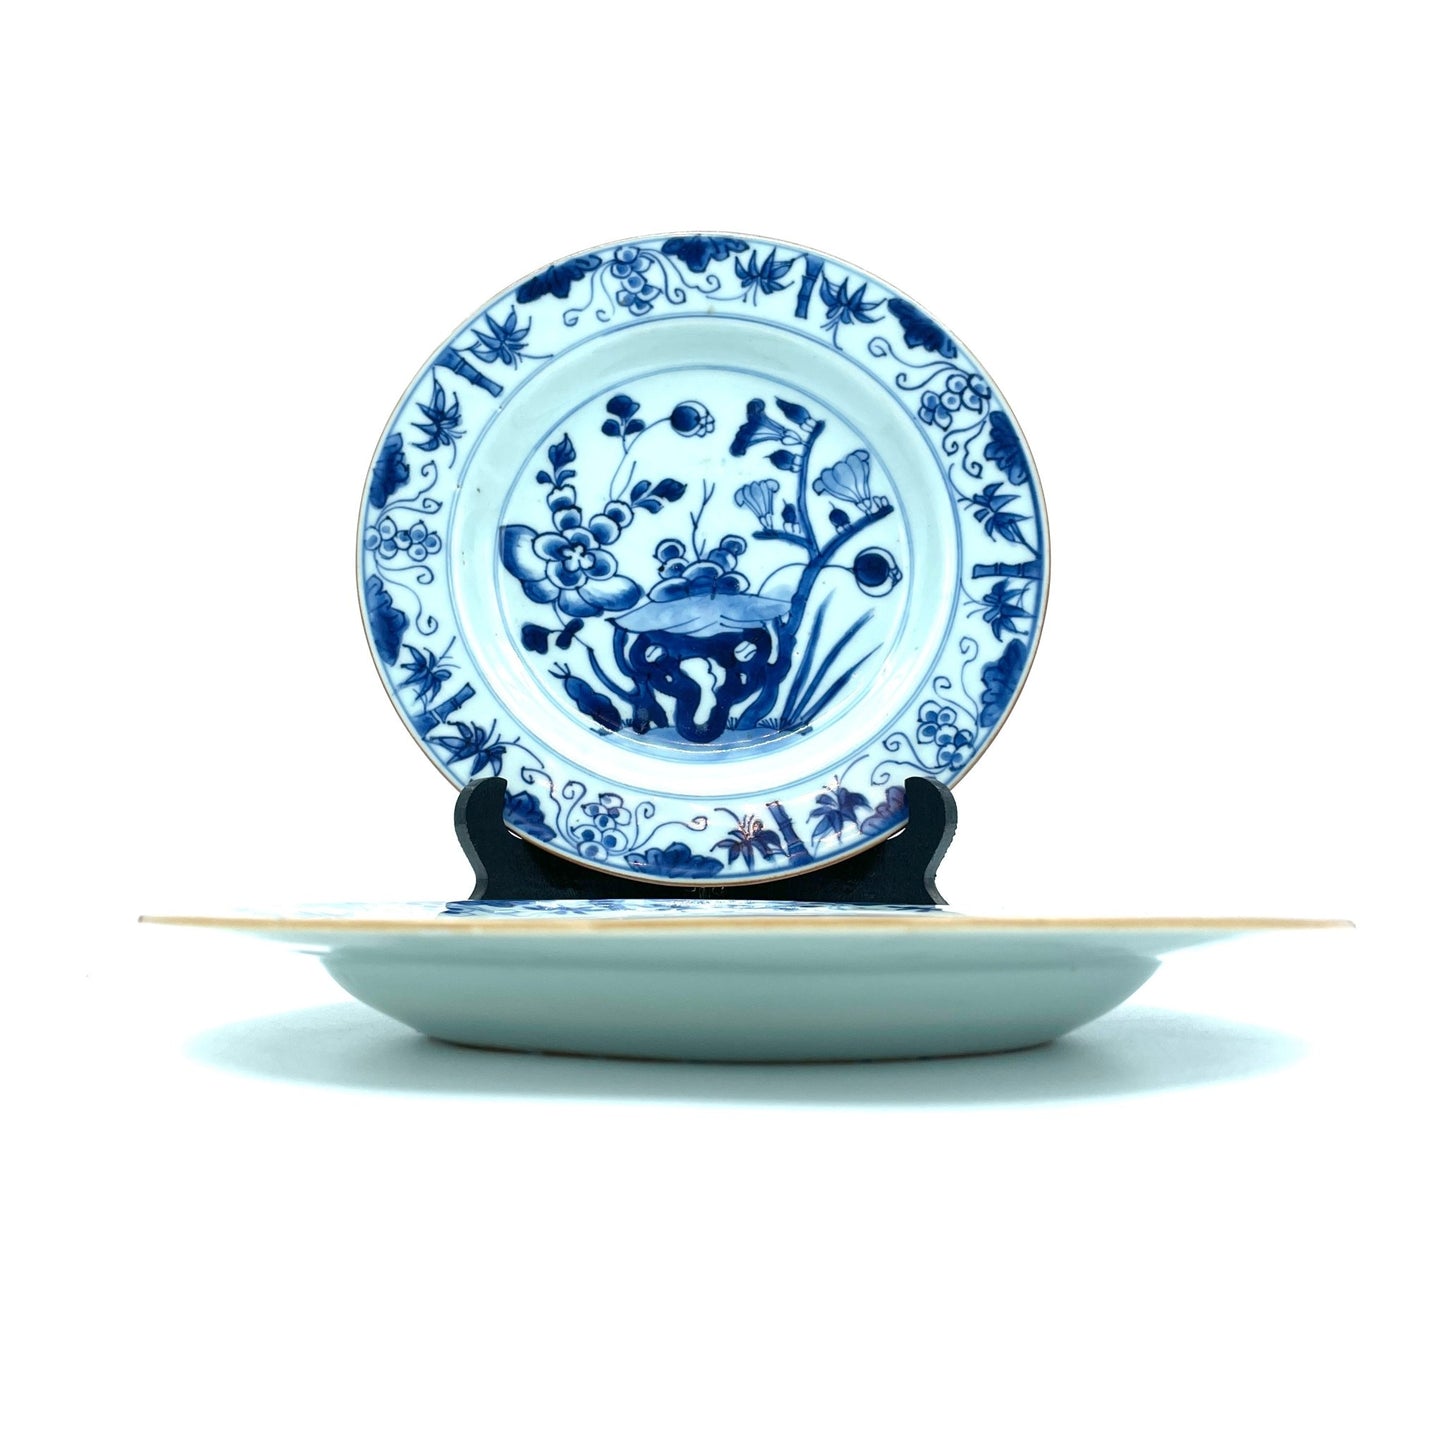 Twee Antieke Chinese Blauwwit Borden met Bloemdecor - antique-vintagedepot